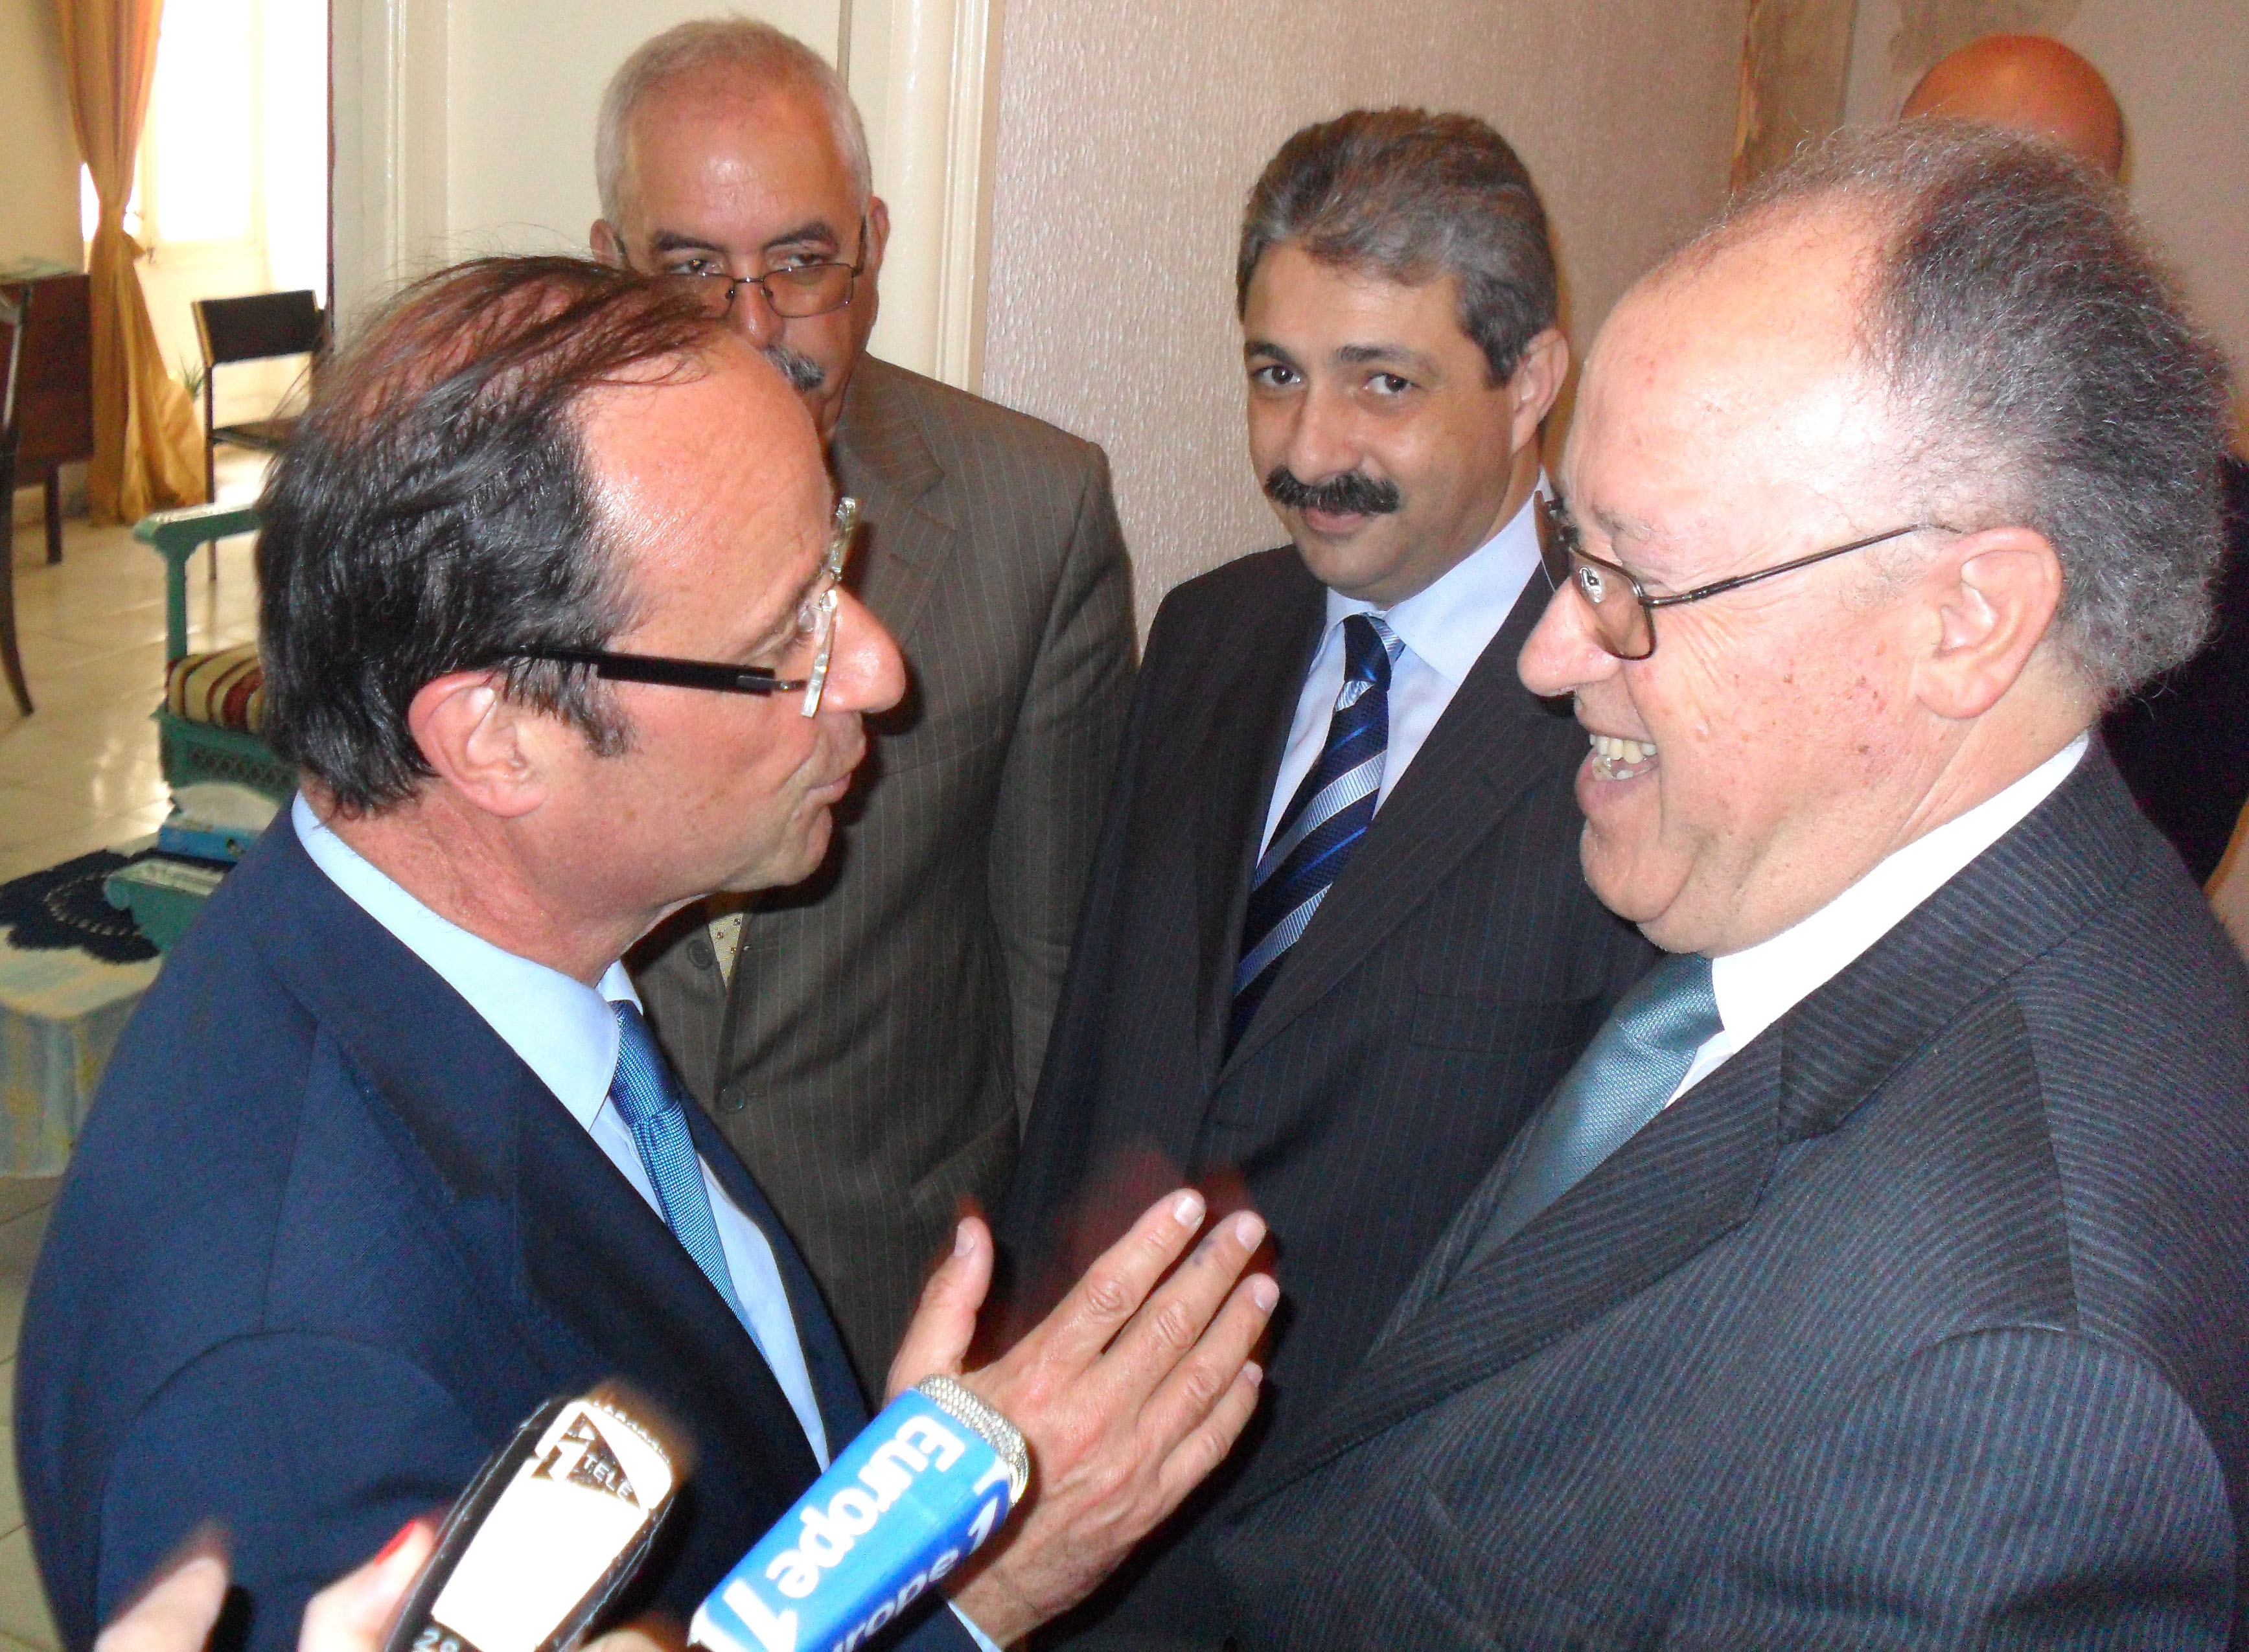 Mustapha Ben Jaafar: A Monsieur François Hollande, Président de la République Française